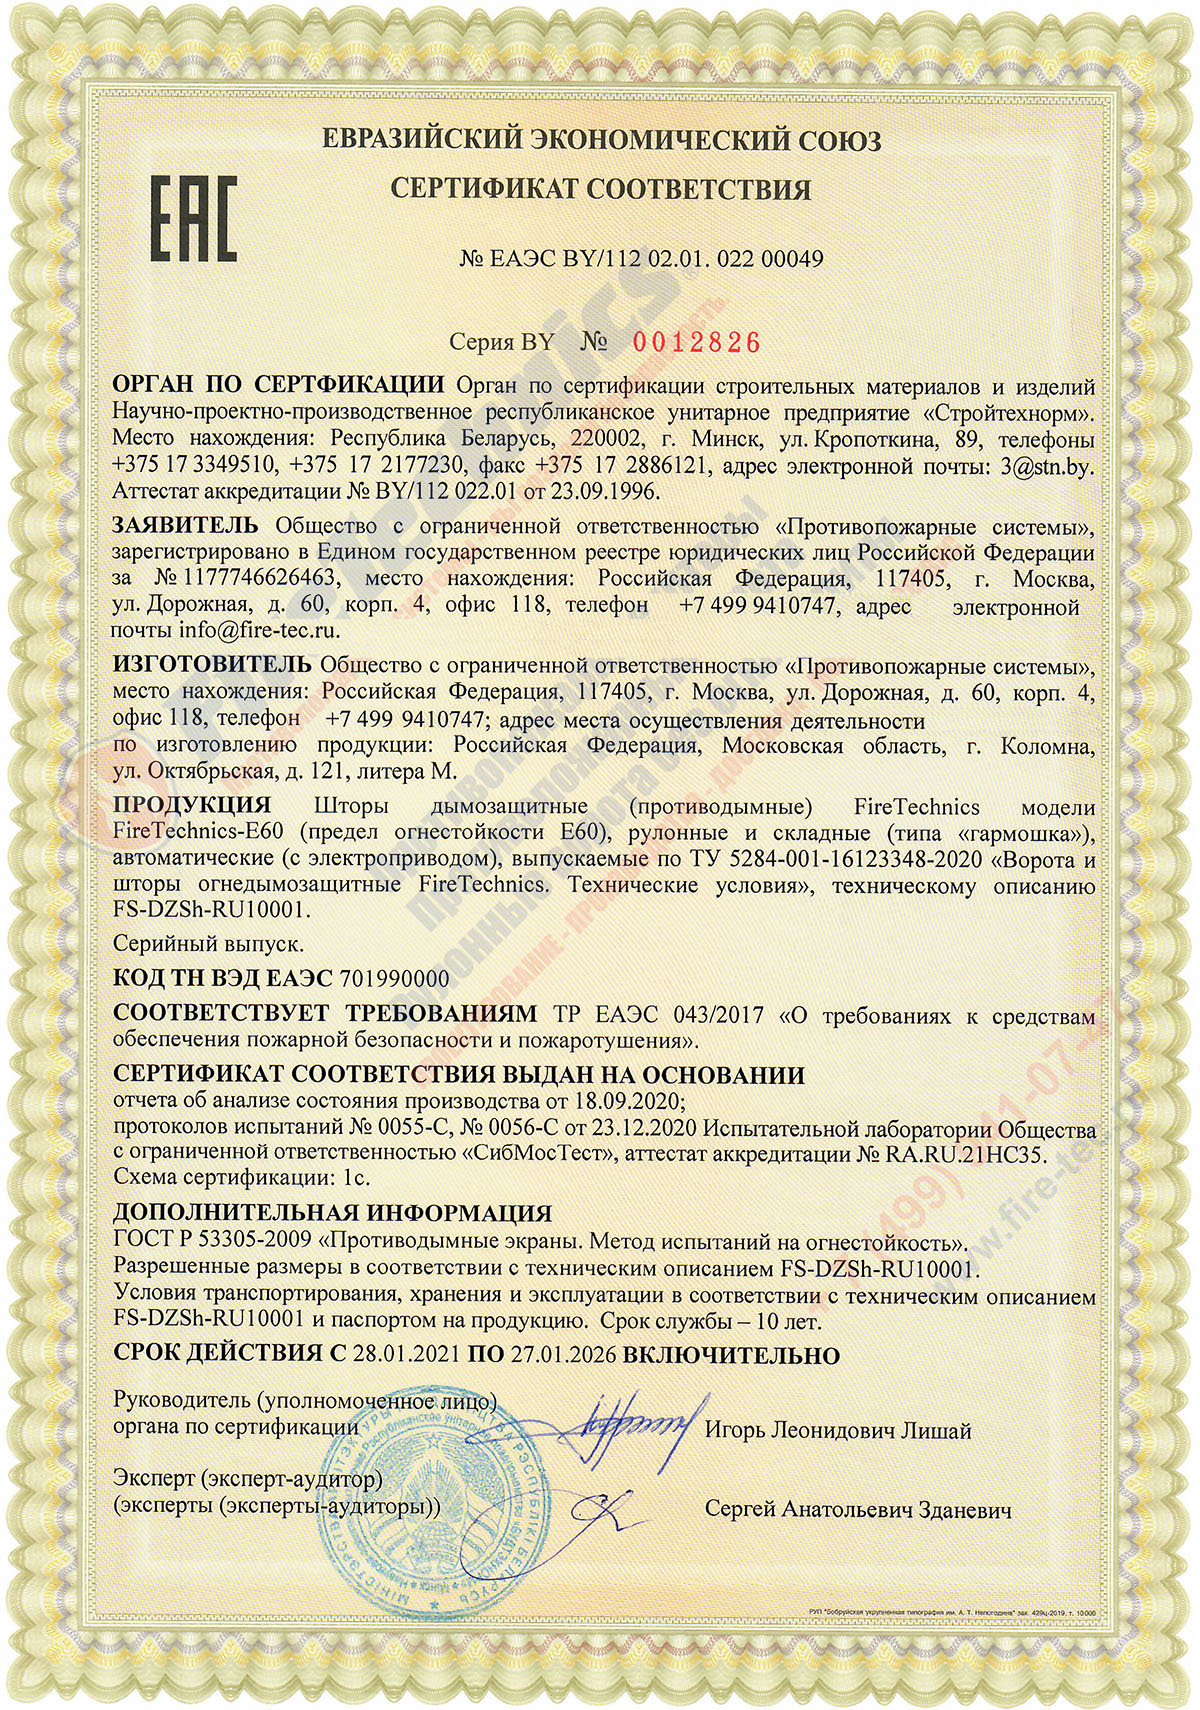 Сертификат соответствия на Дымозащитные (противодымные) шторы FireTechnics модели FireTechnics-E60 № ЕАЭС BY/112 02.01. 022 00049 в Казахстане